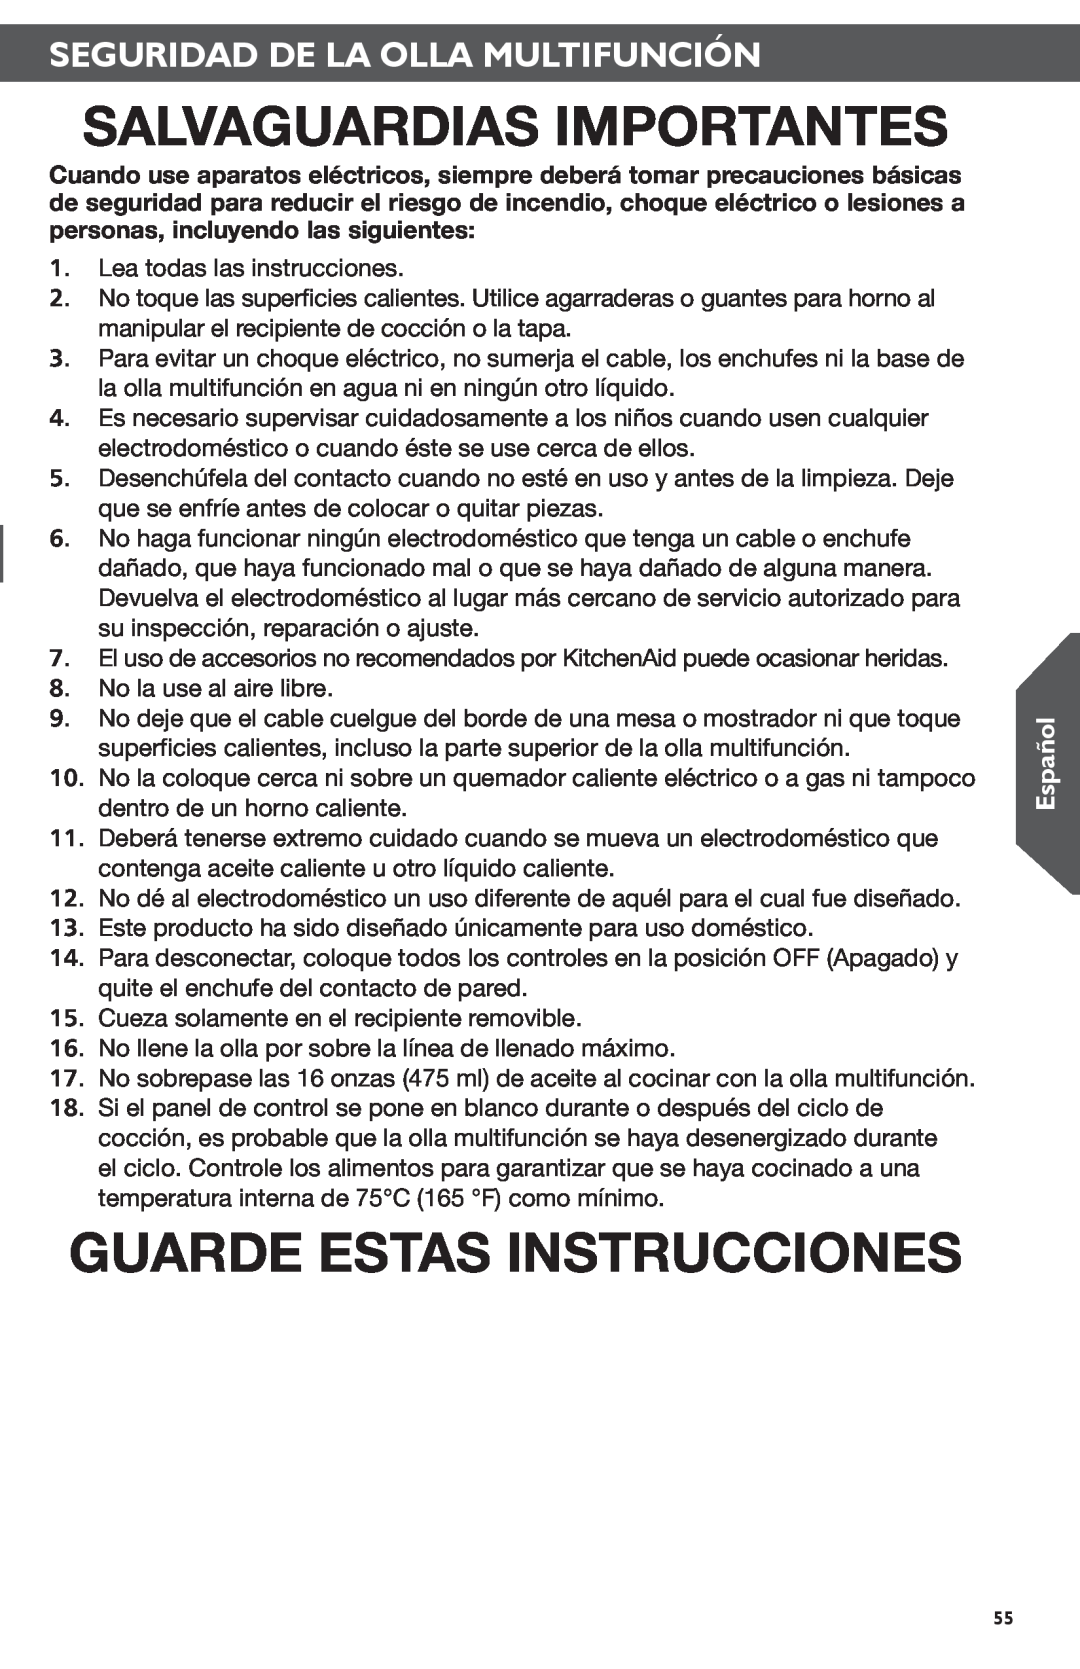 KitchenAid KMC4241 manual Salvaguardias Importantes, Guarde Estas Instrucciones, Seguridad De La Olla Multifunción, Español 